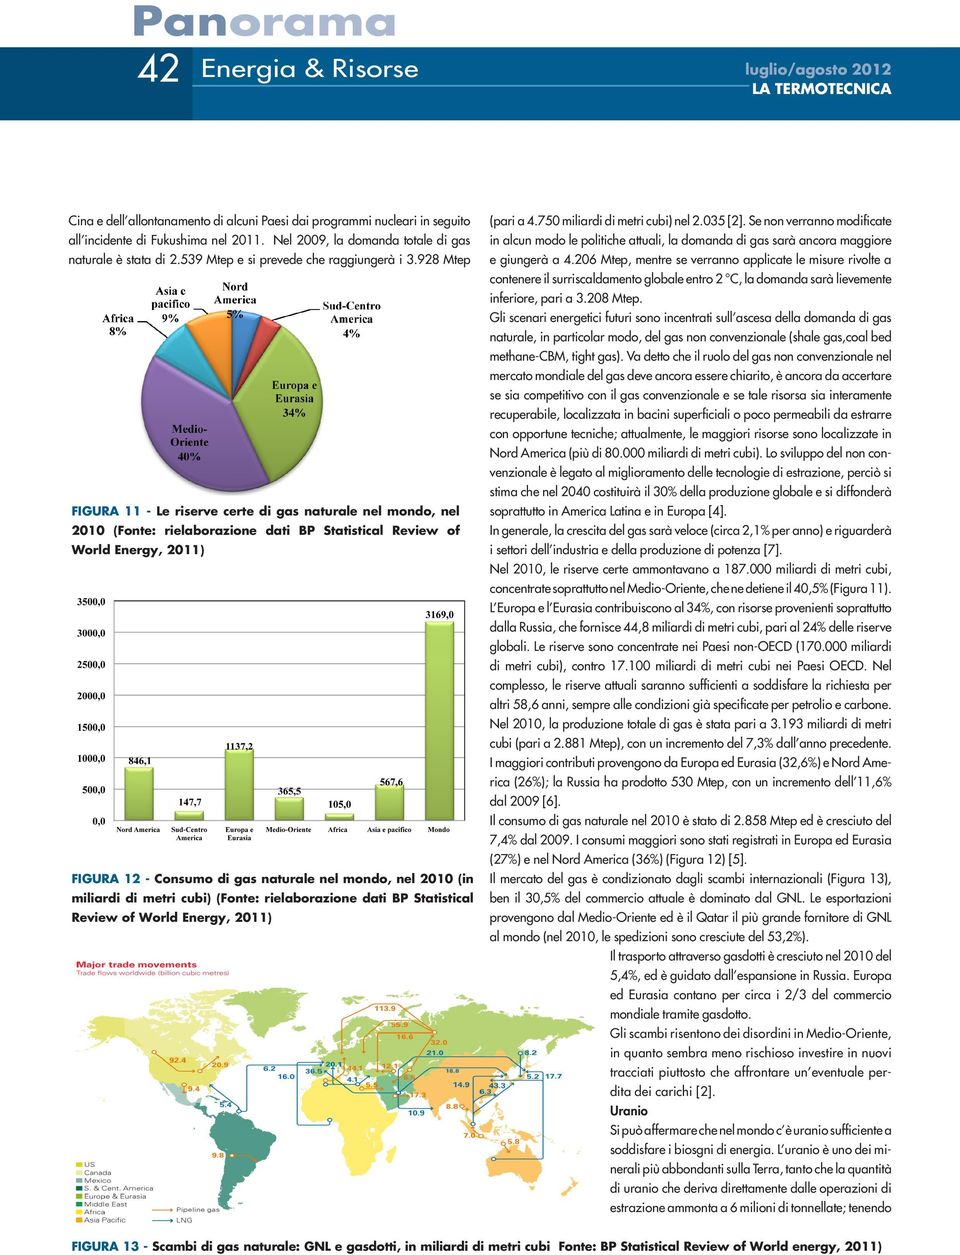 928 Mtep FIGURA 11 - Le riserve certe di gas naturale nel mondo, nel 2010 (Fonte: rielaborazione dati BP Statistical Review of World Energy, 2011) FIGURA 12 - Consumo di gas naturale nel mondo, nel